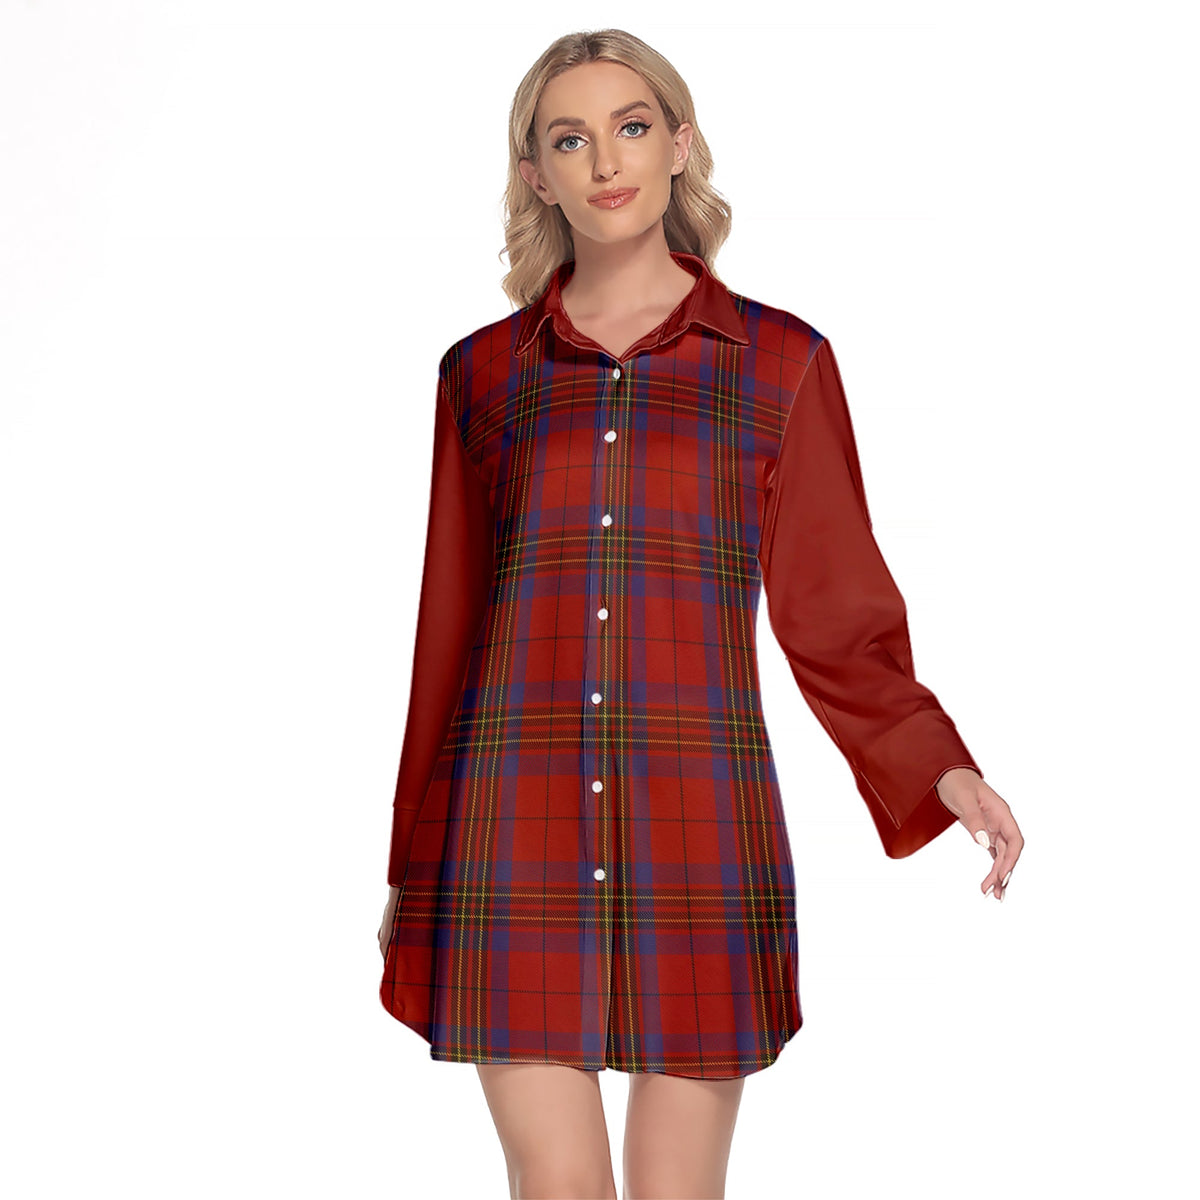 Leslie Red Tartan Women's Lapel Shirt Dress With Long Sleeve